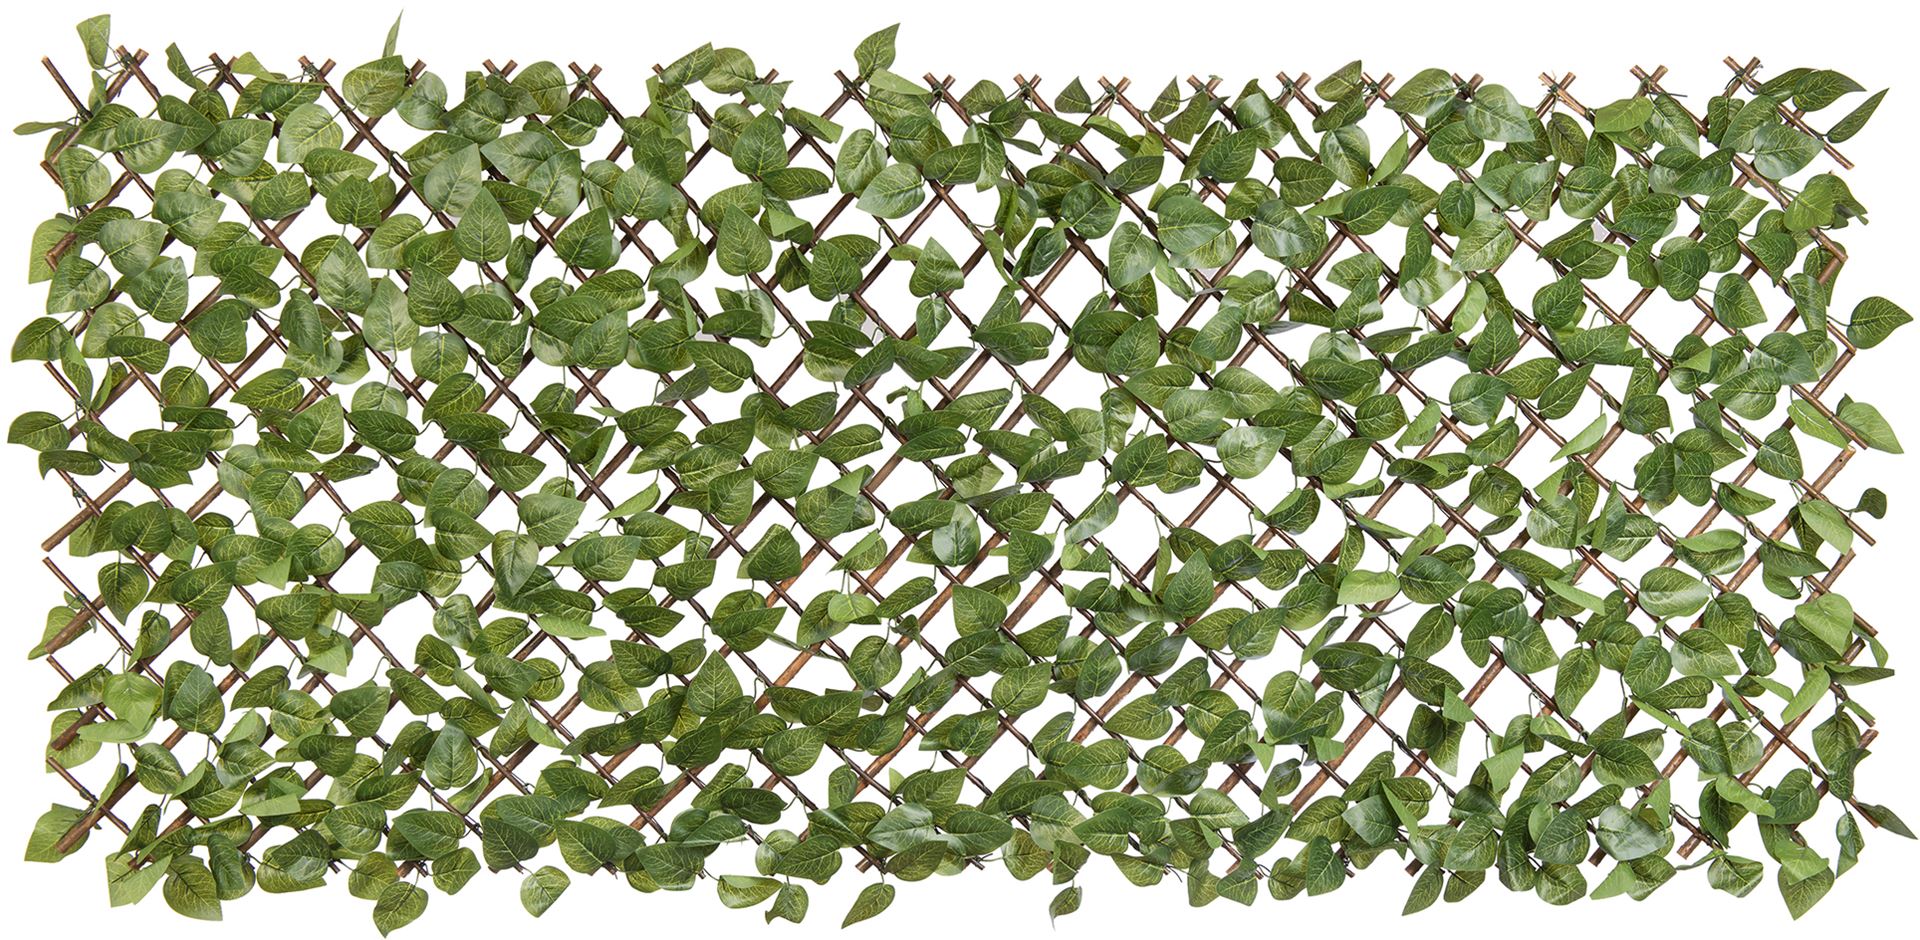 wilgen-klimrek-met-pe-laurierblad-bladeren-662-groene-kleur-gaas-7x7-cm-h90-x-180-cm